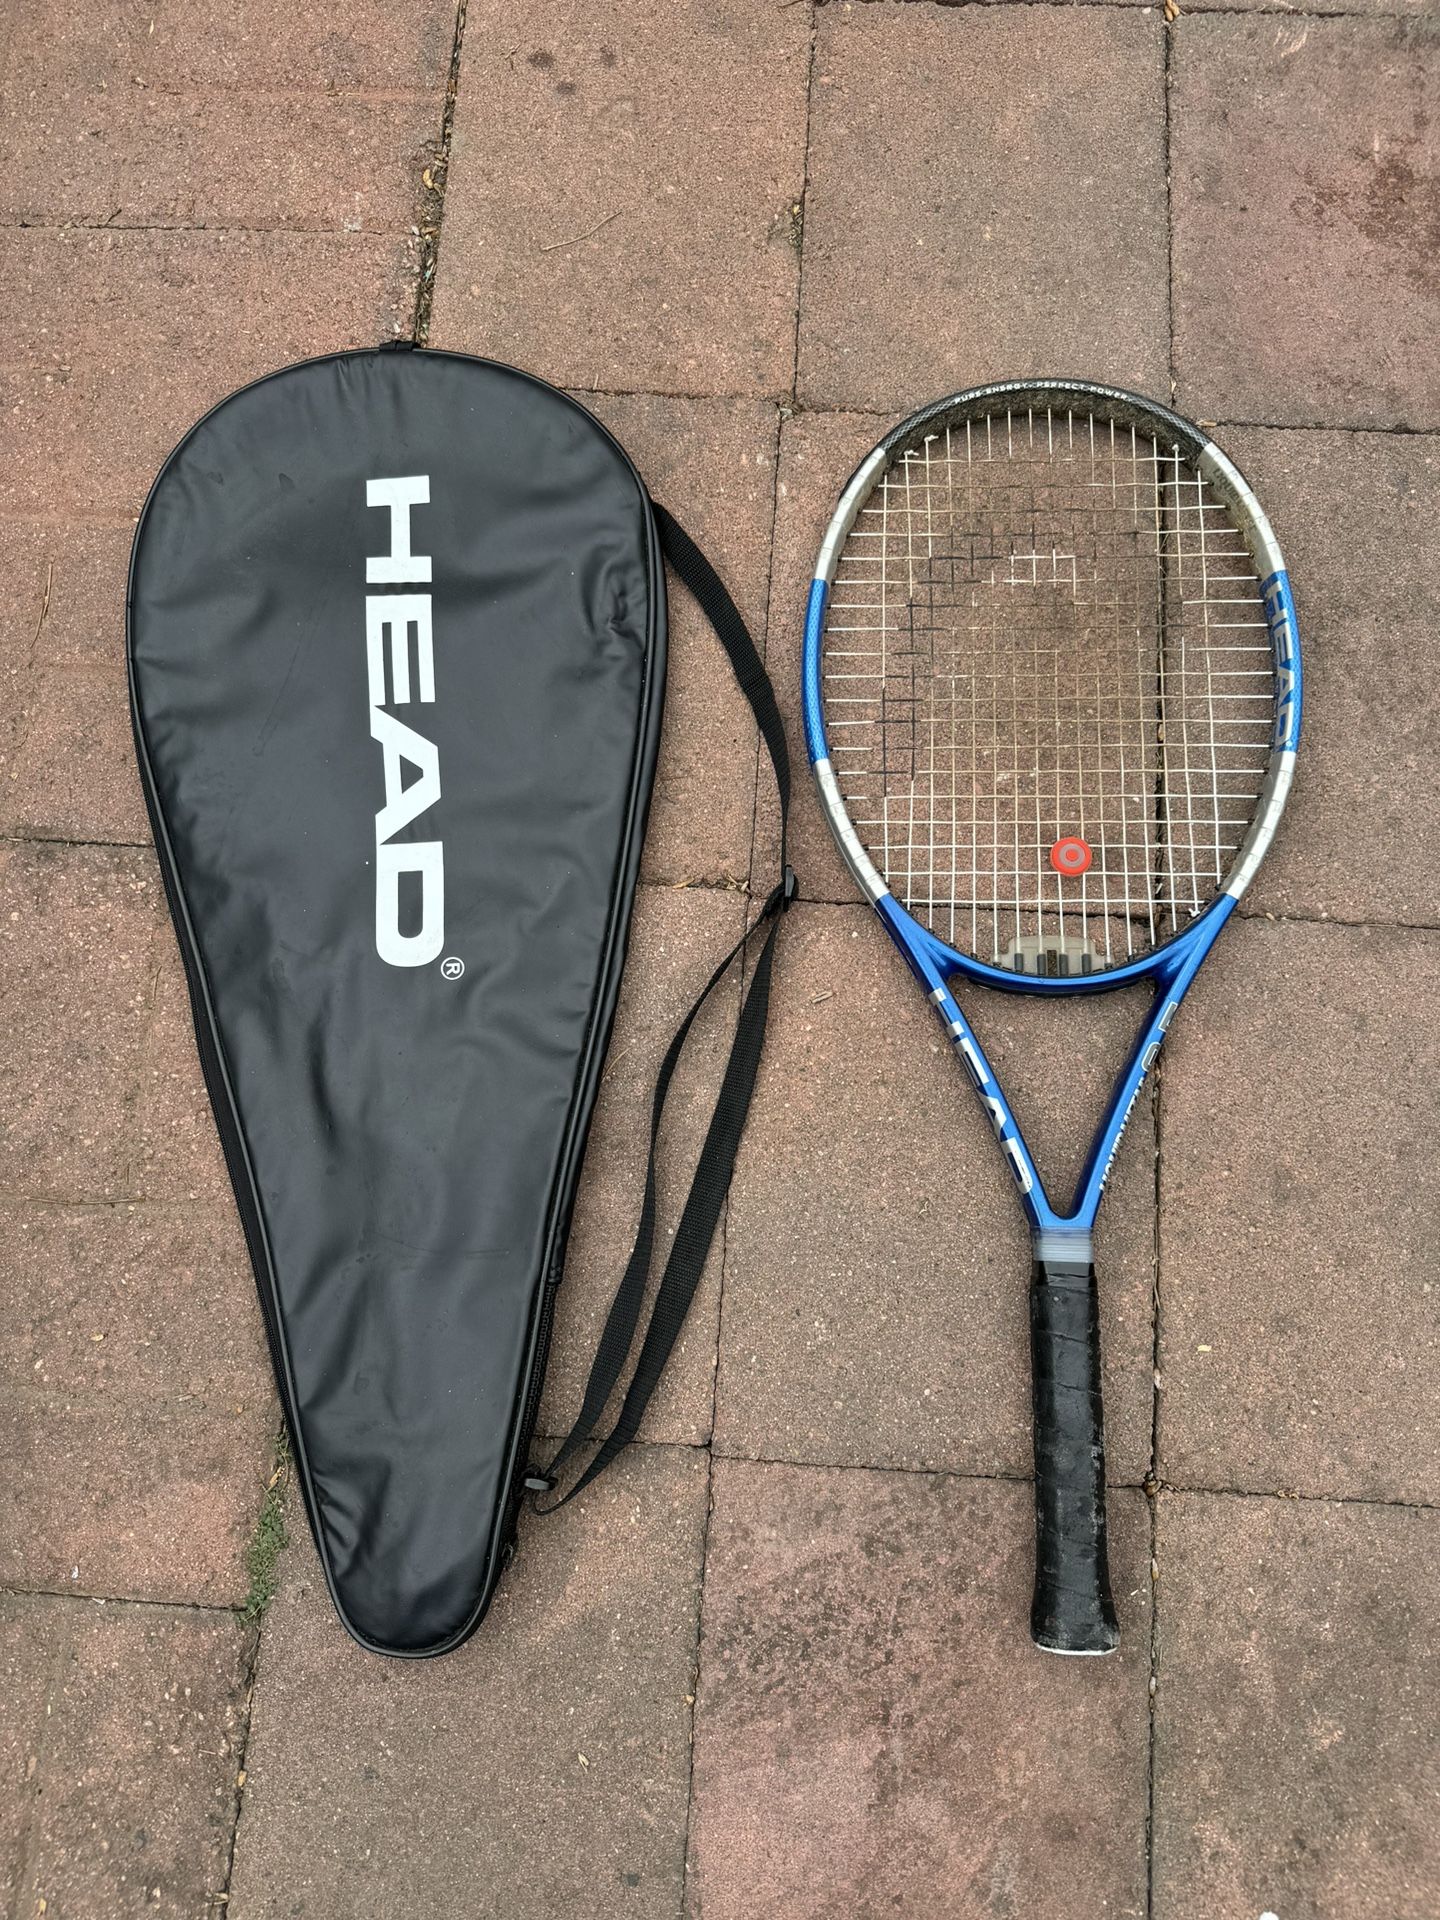 Head Liquidmetal 4 Tennis Racket